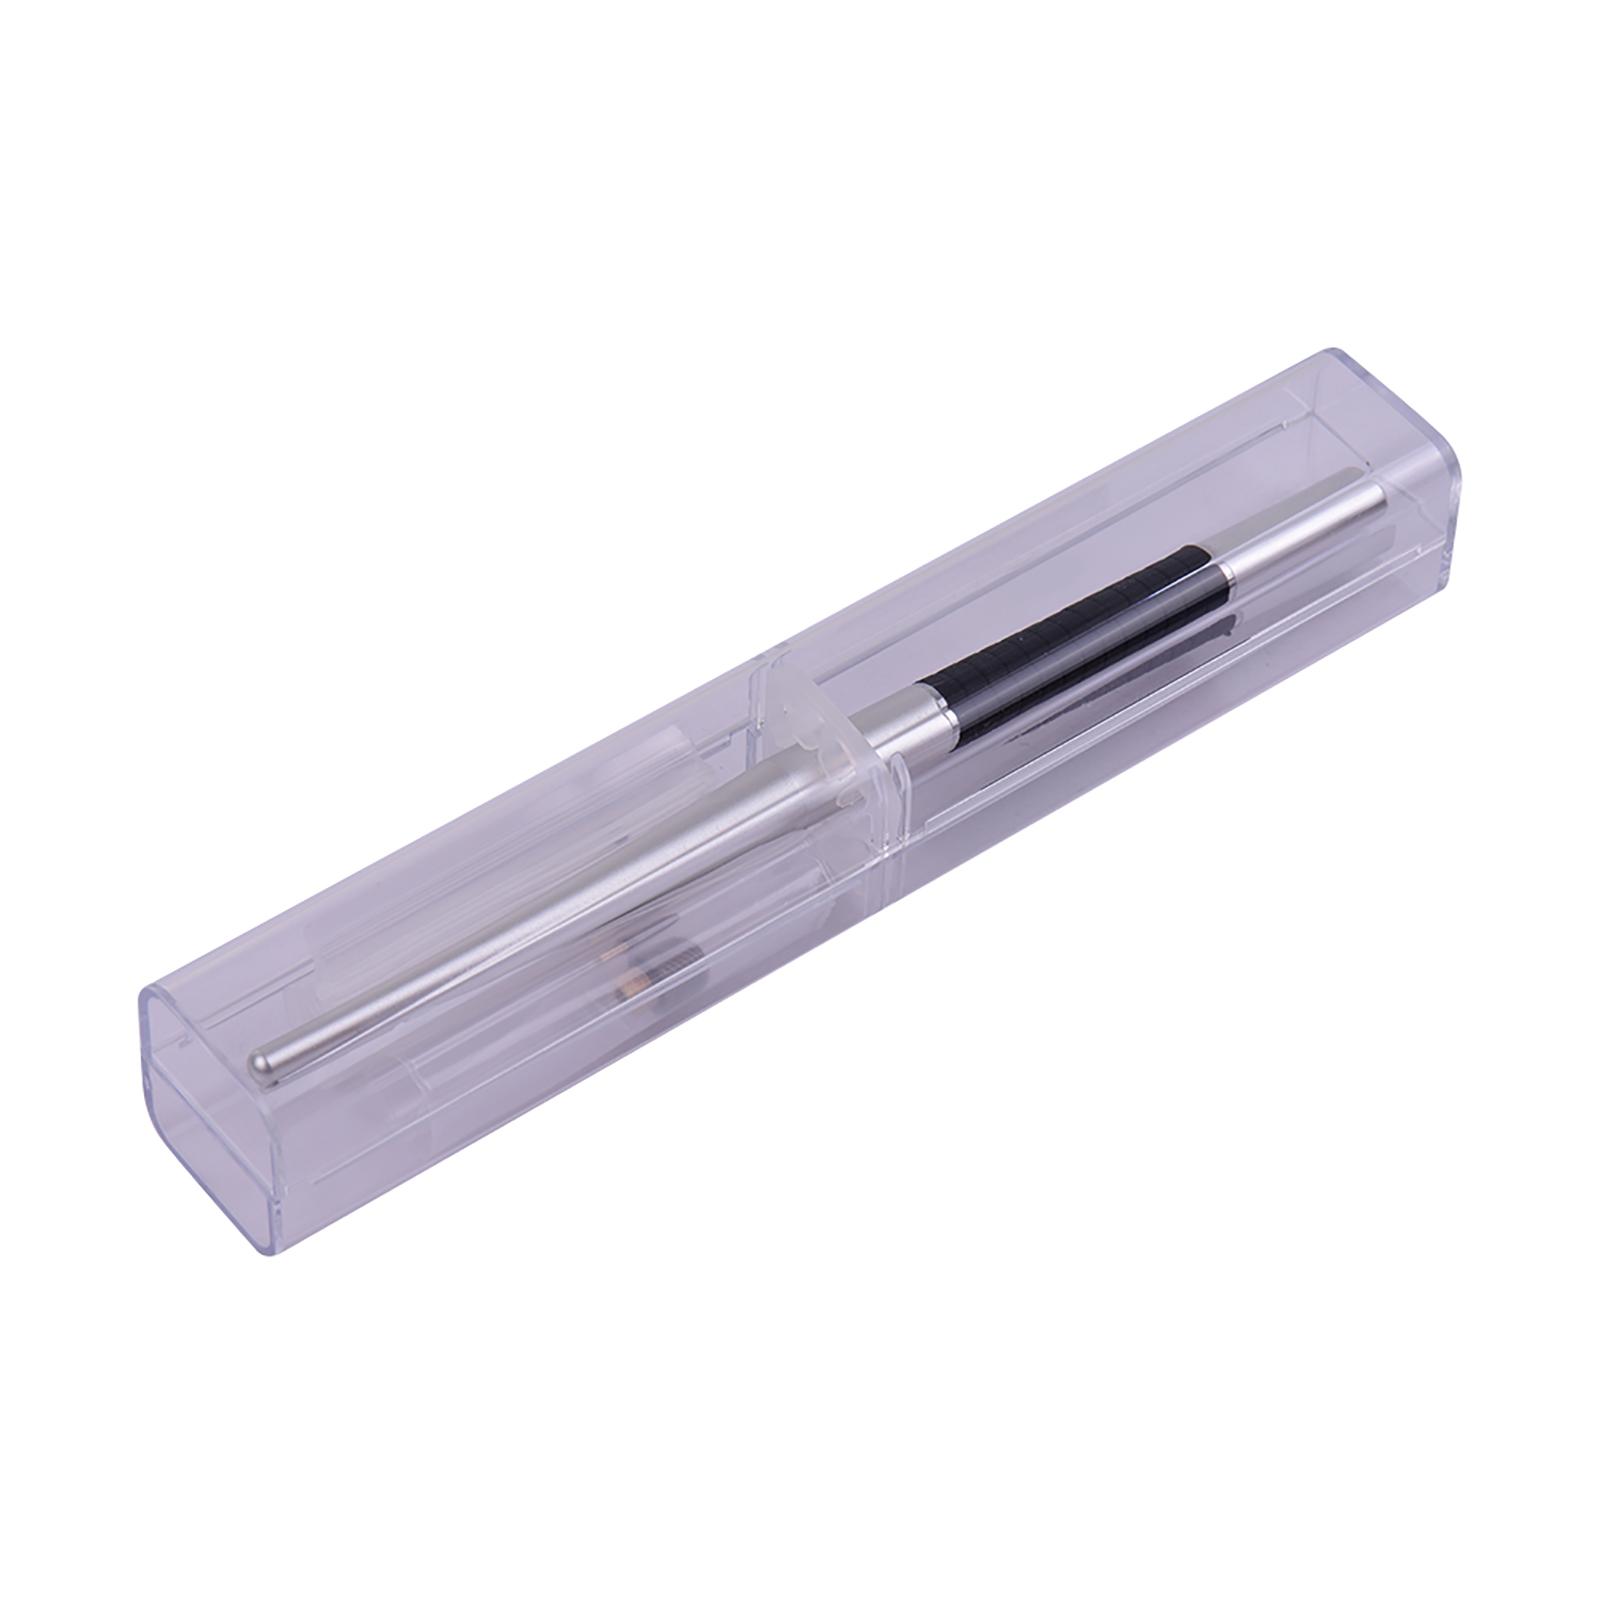 Bộ bút cảm ứng điện dung 2 trong 1 có độ chính xác cao với đầu sợi quang và đầu đĩa Bút cảm ứng kim loại dành cho máy tính bảng điện thoại di động